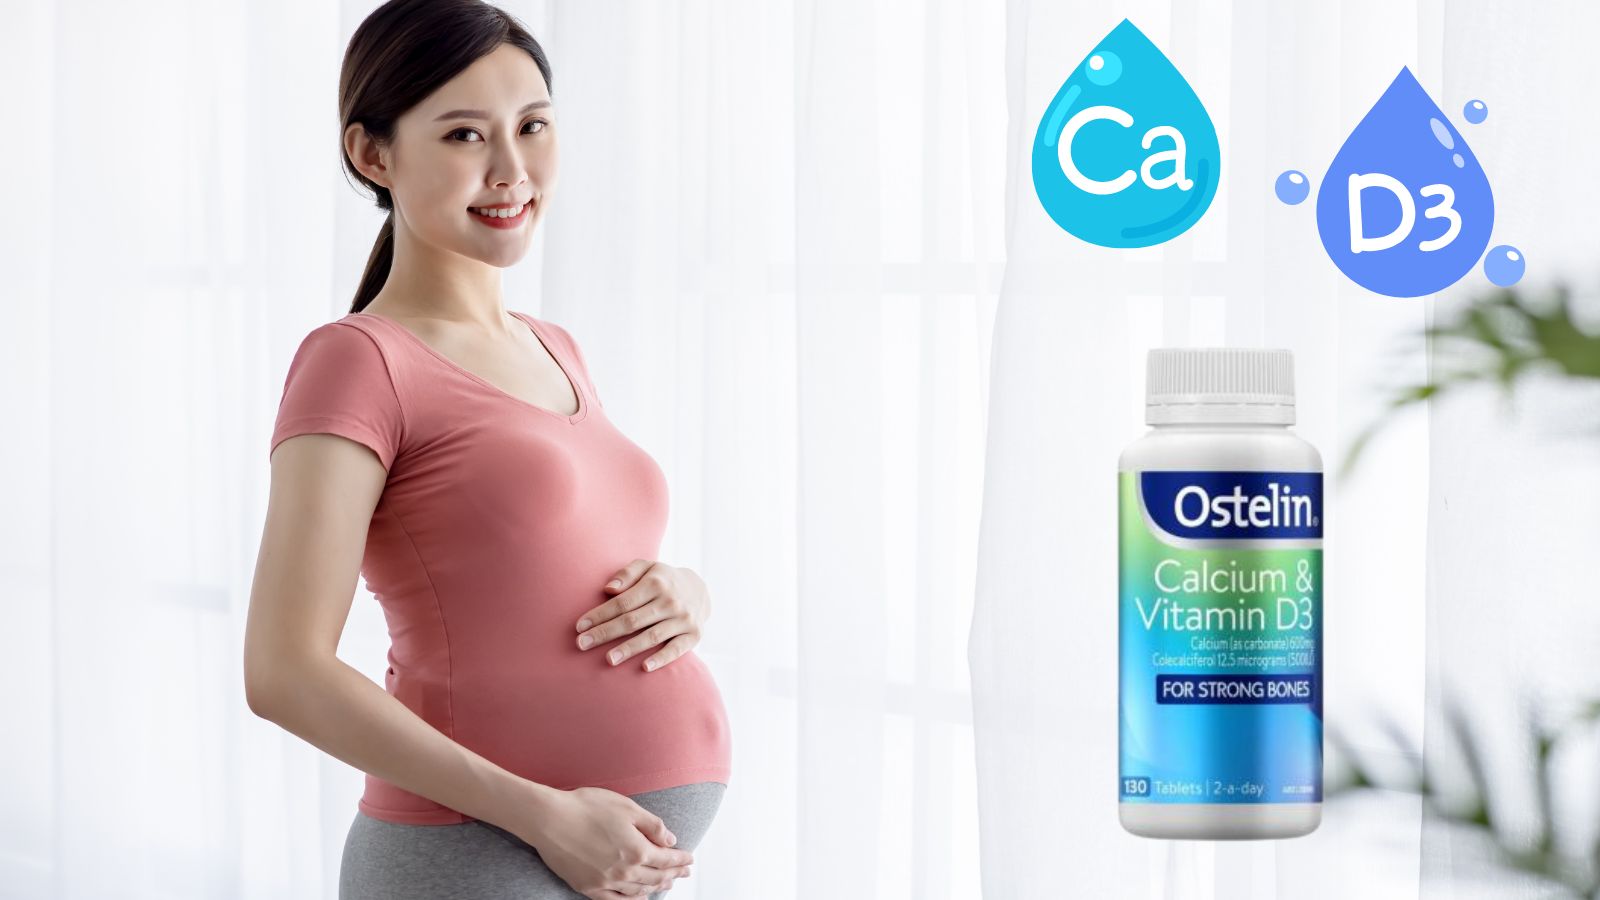  Canxi Ostelin bổ sung đủ 2 dưỡng chất cần thiết cho bà bầu